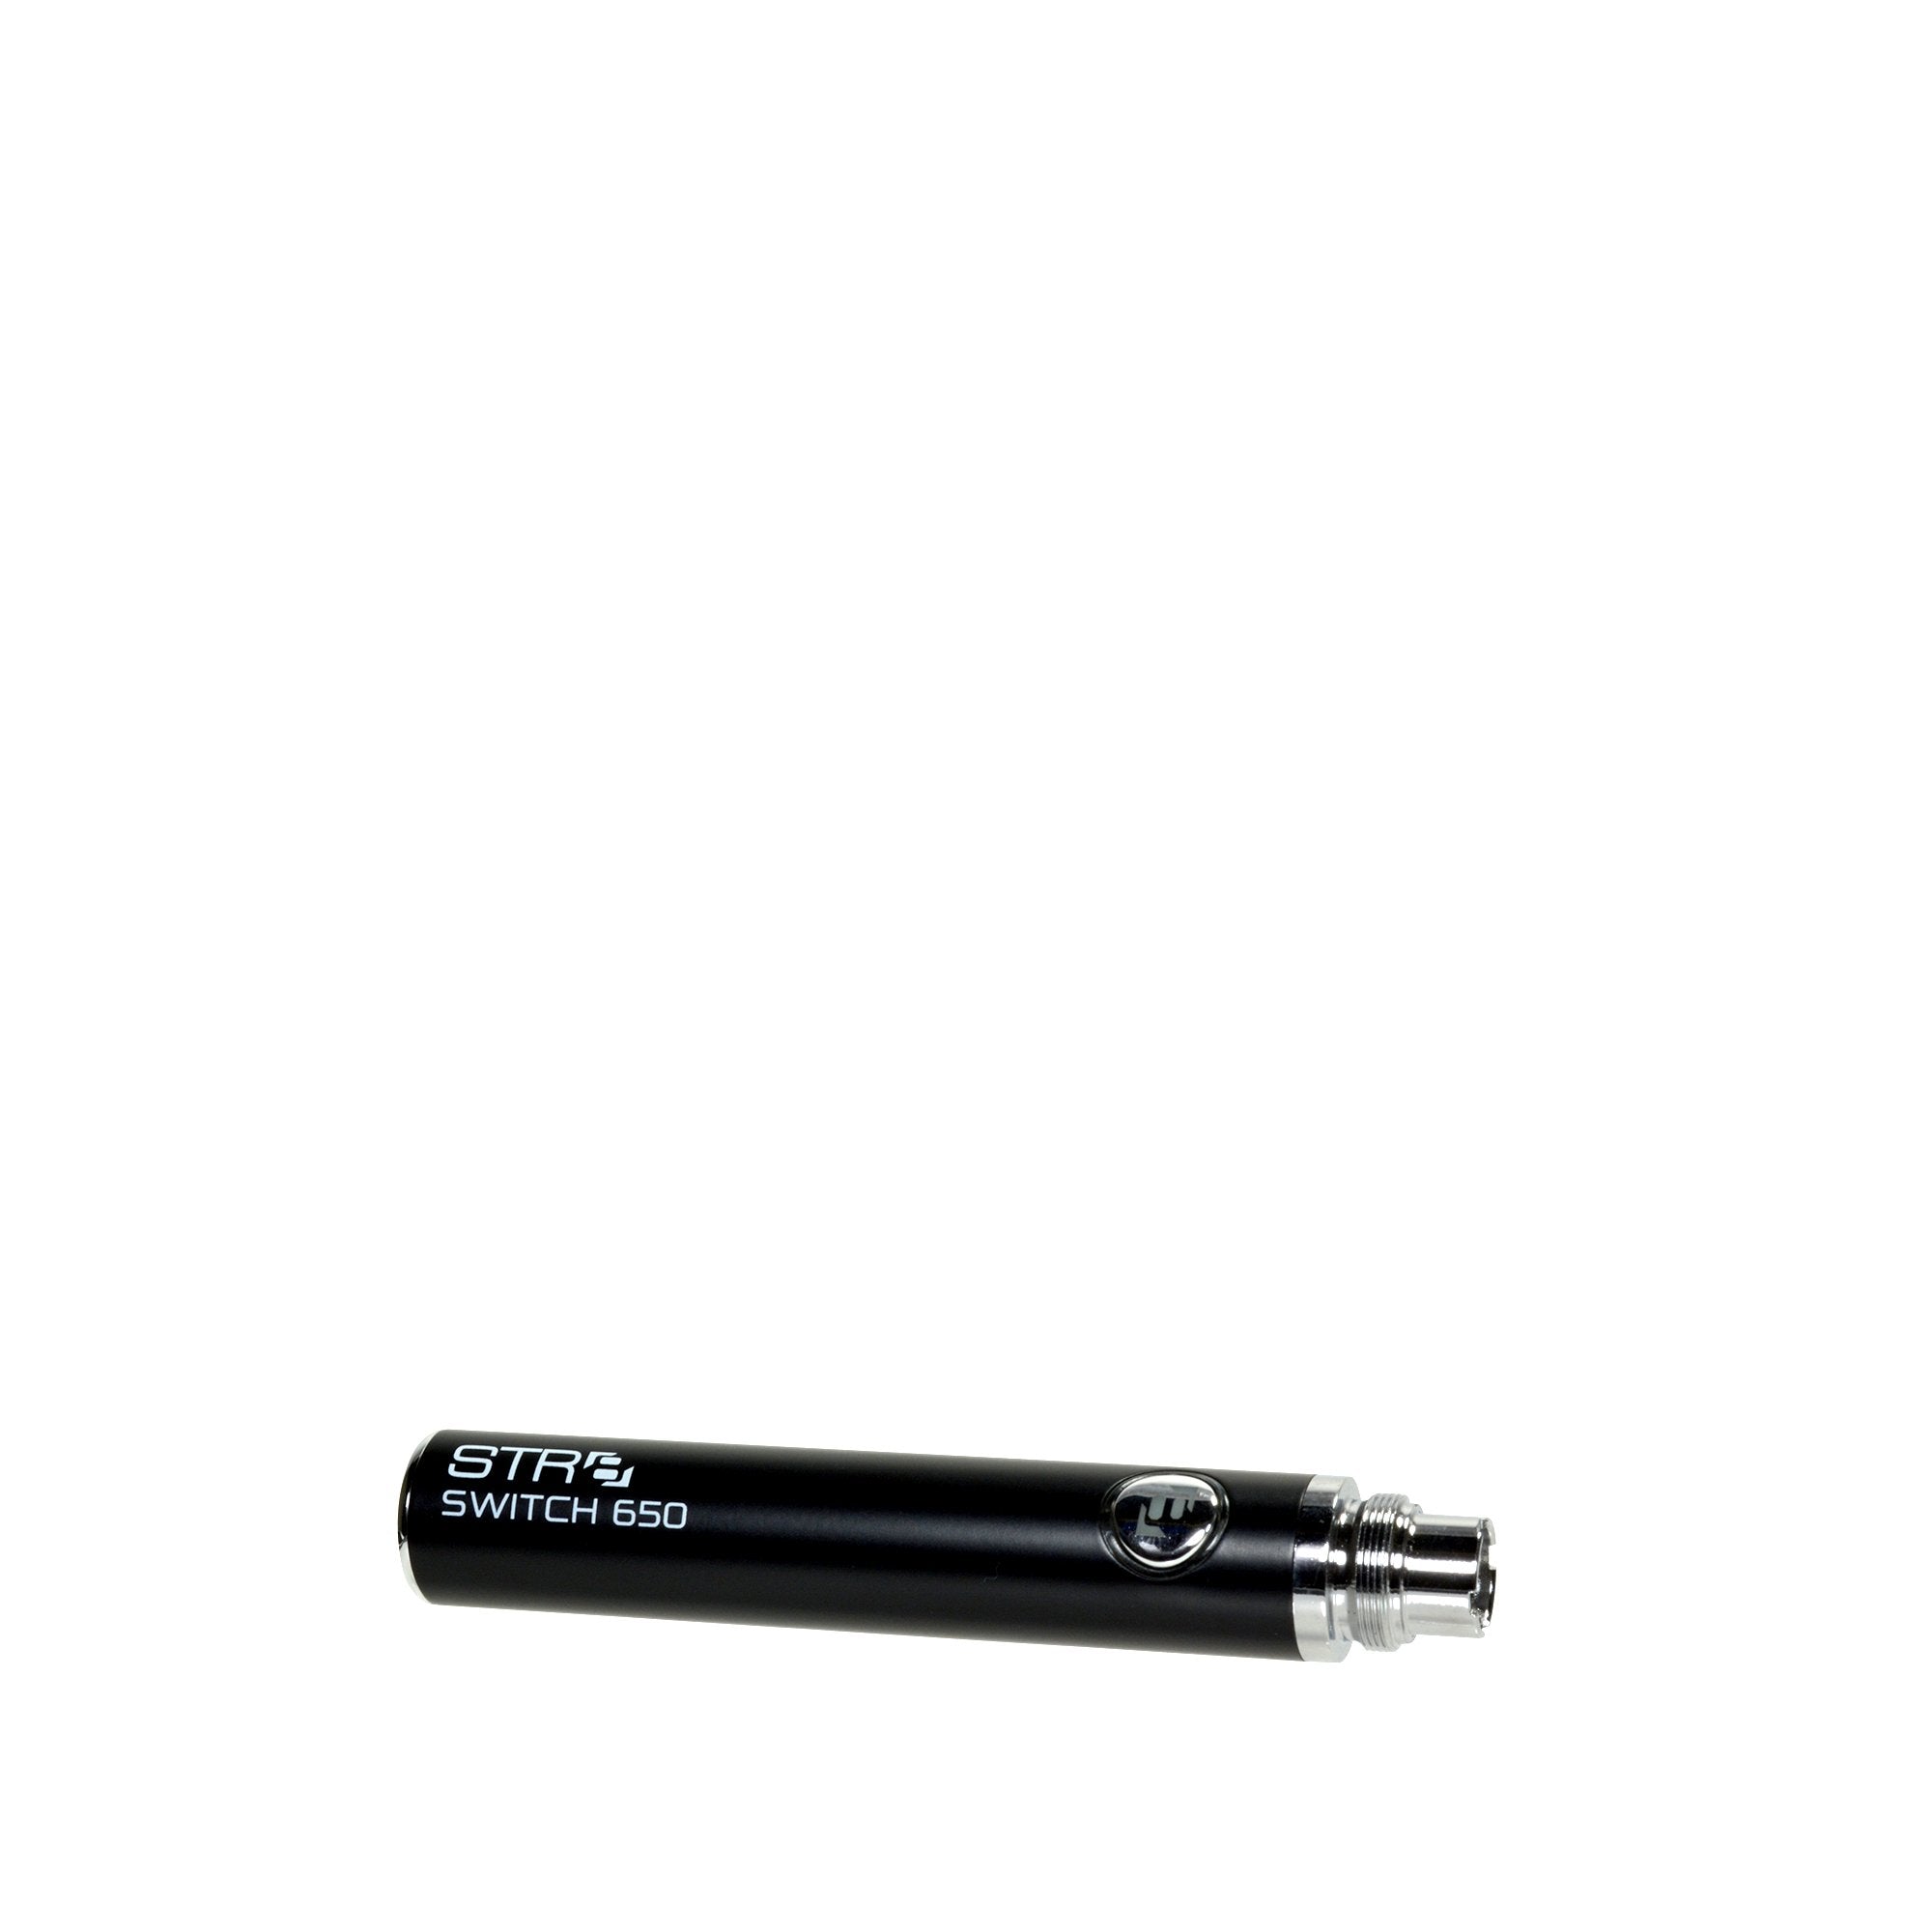 STR8 | Switch Evod Vape Battery 650mAh - Black - 5 Count - 4